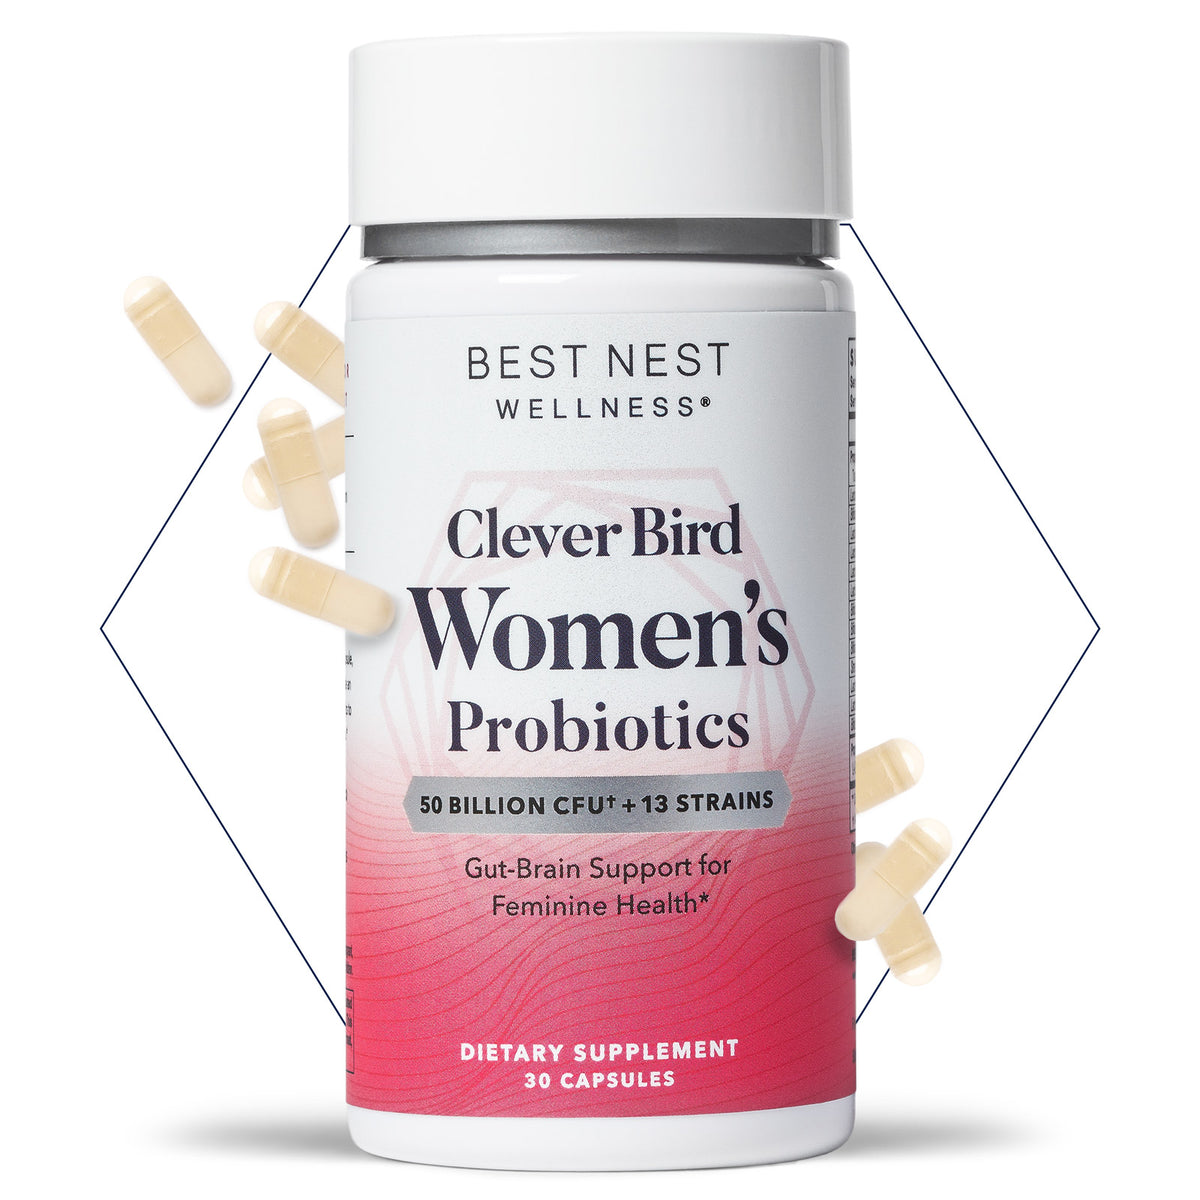 Clever Bird Women's Probiotics